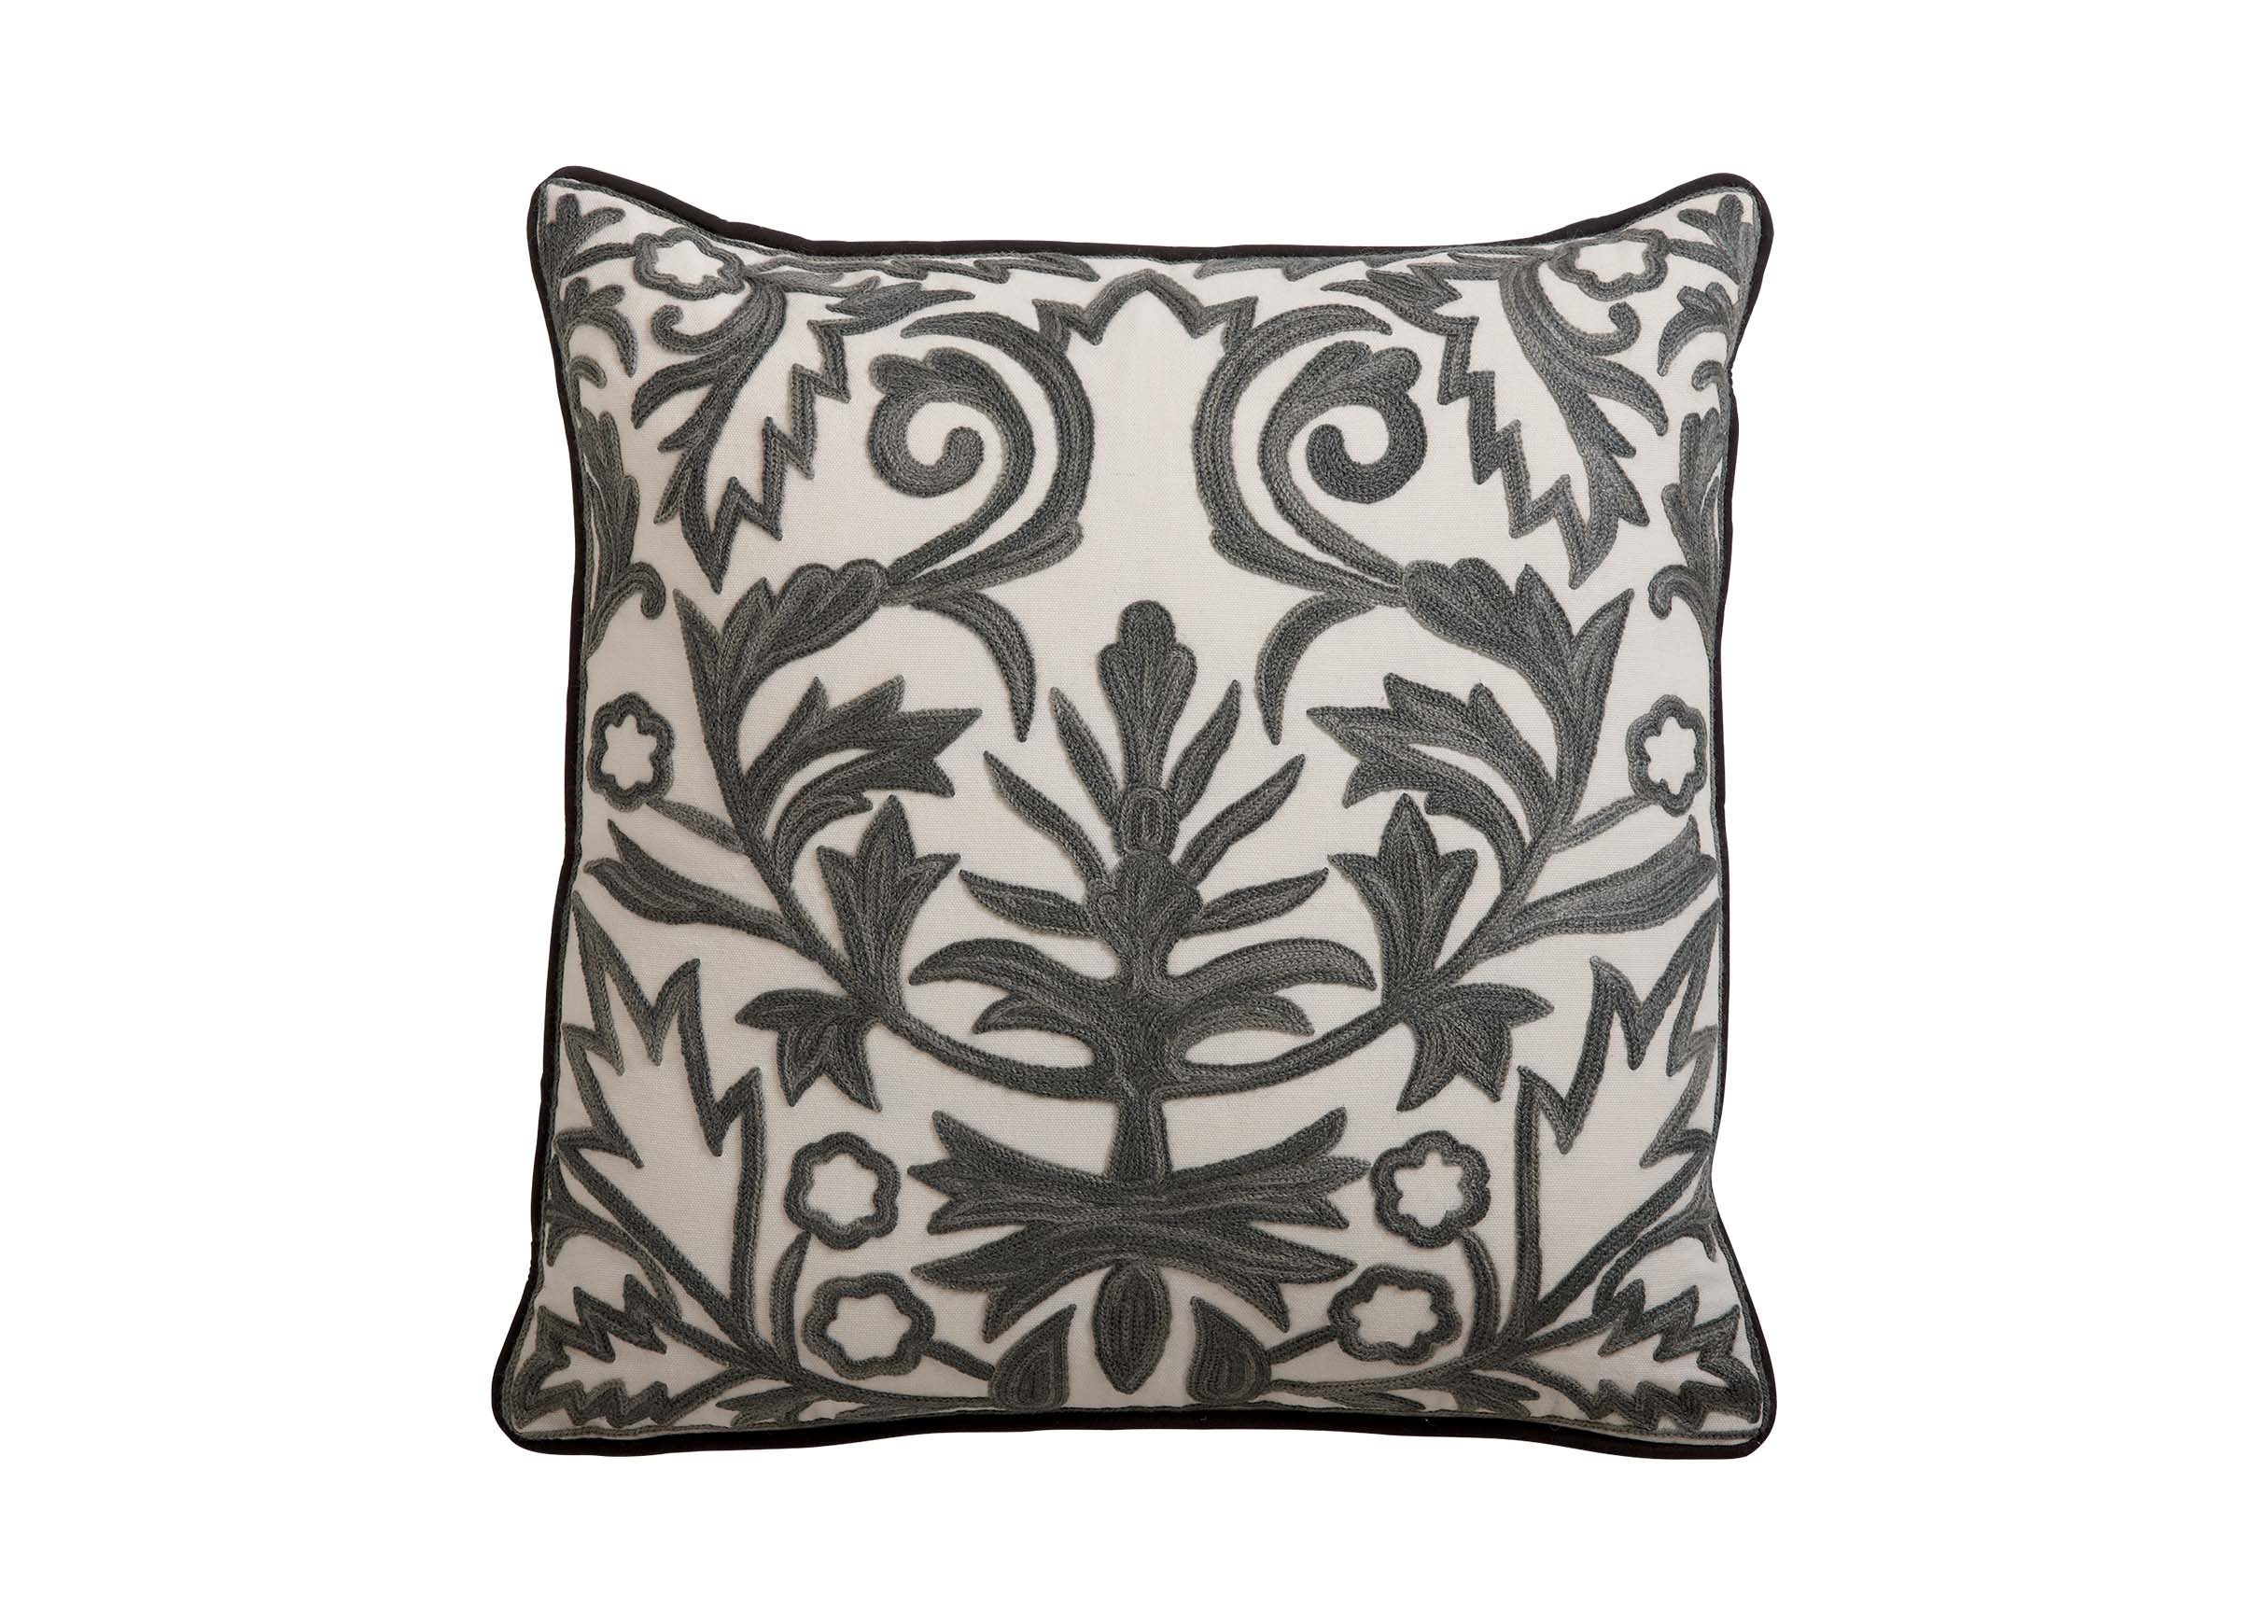 Crewel Embroidered Fern Trellis Pillow | Pillows | Ethan Allen